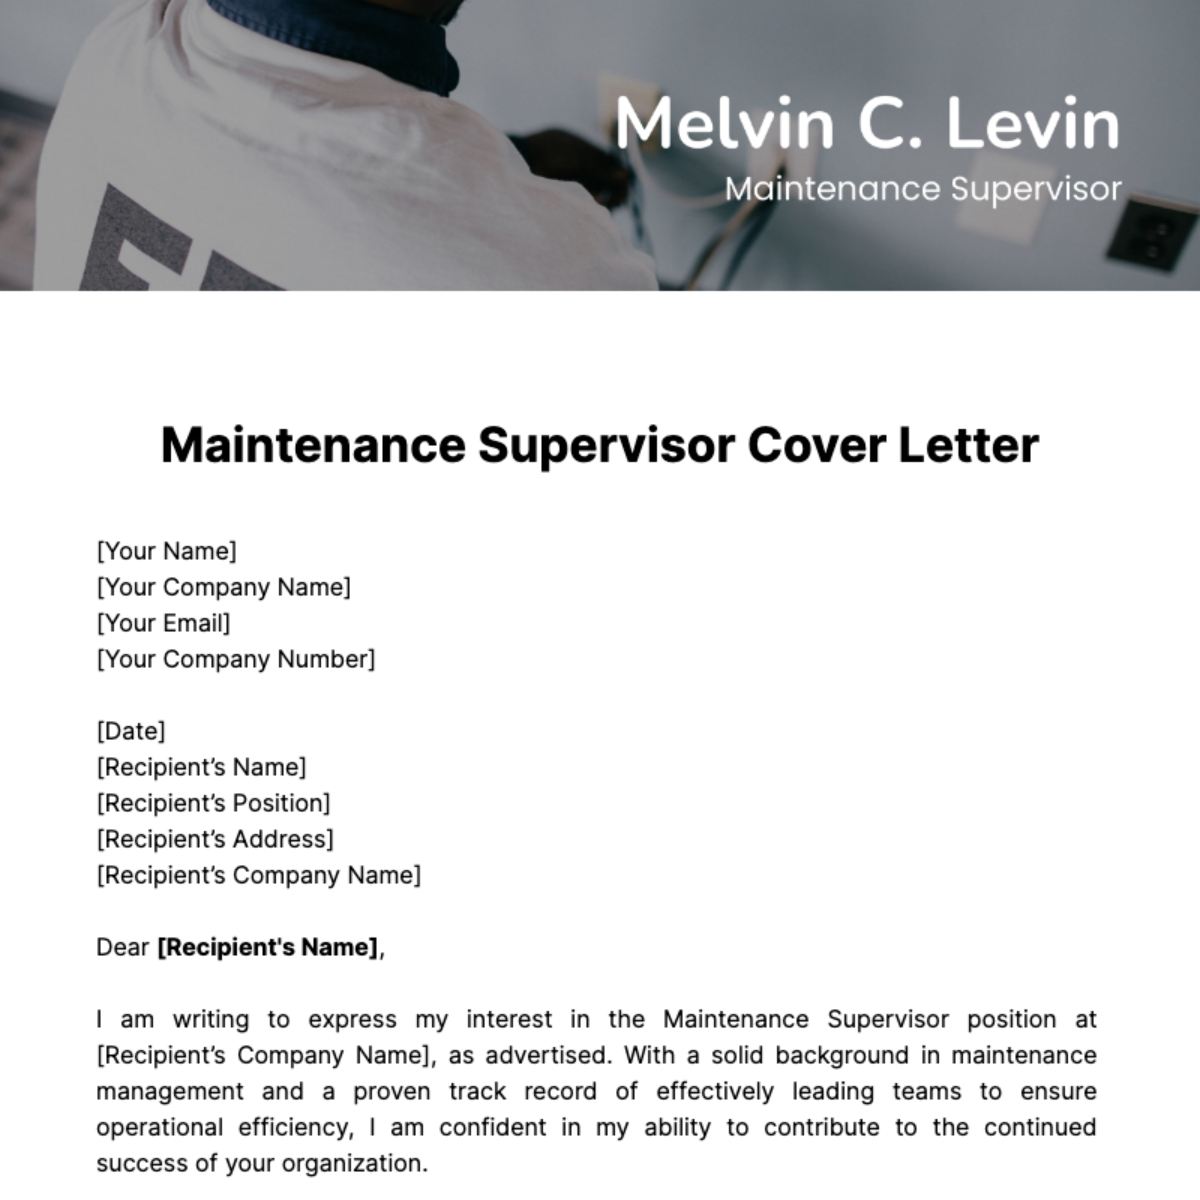 Maintenance Supervisor Cover Letter Template